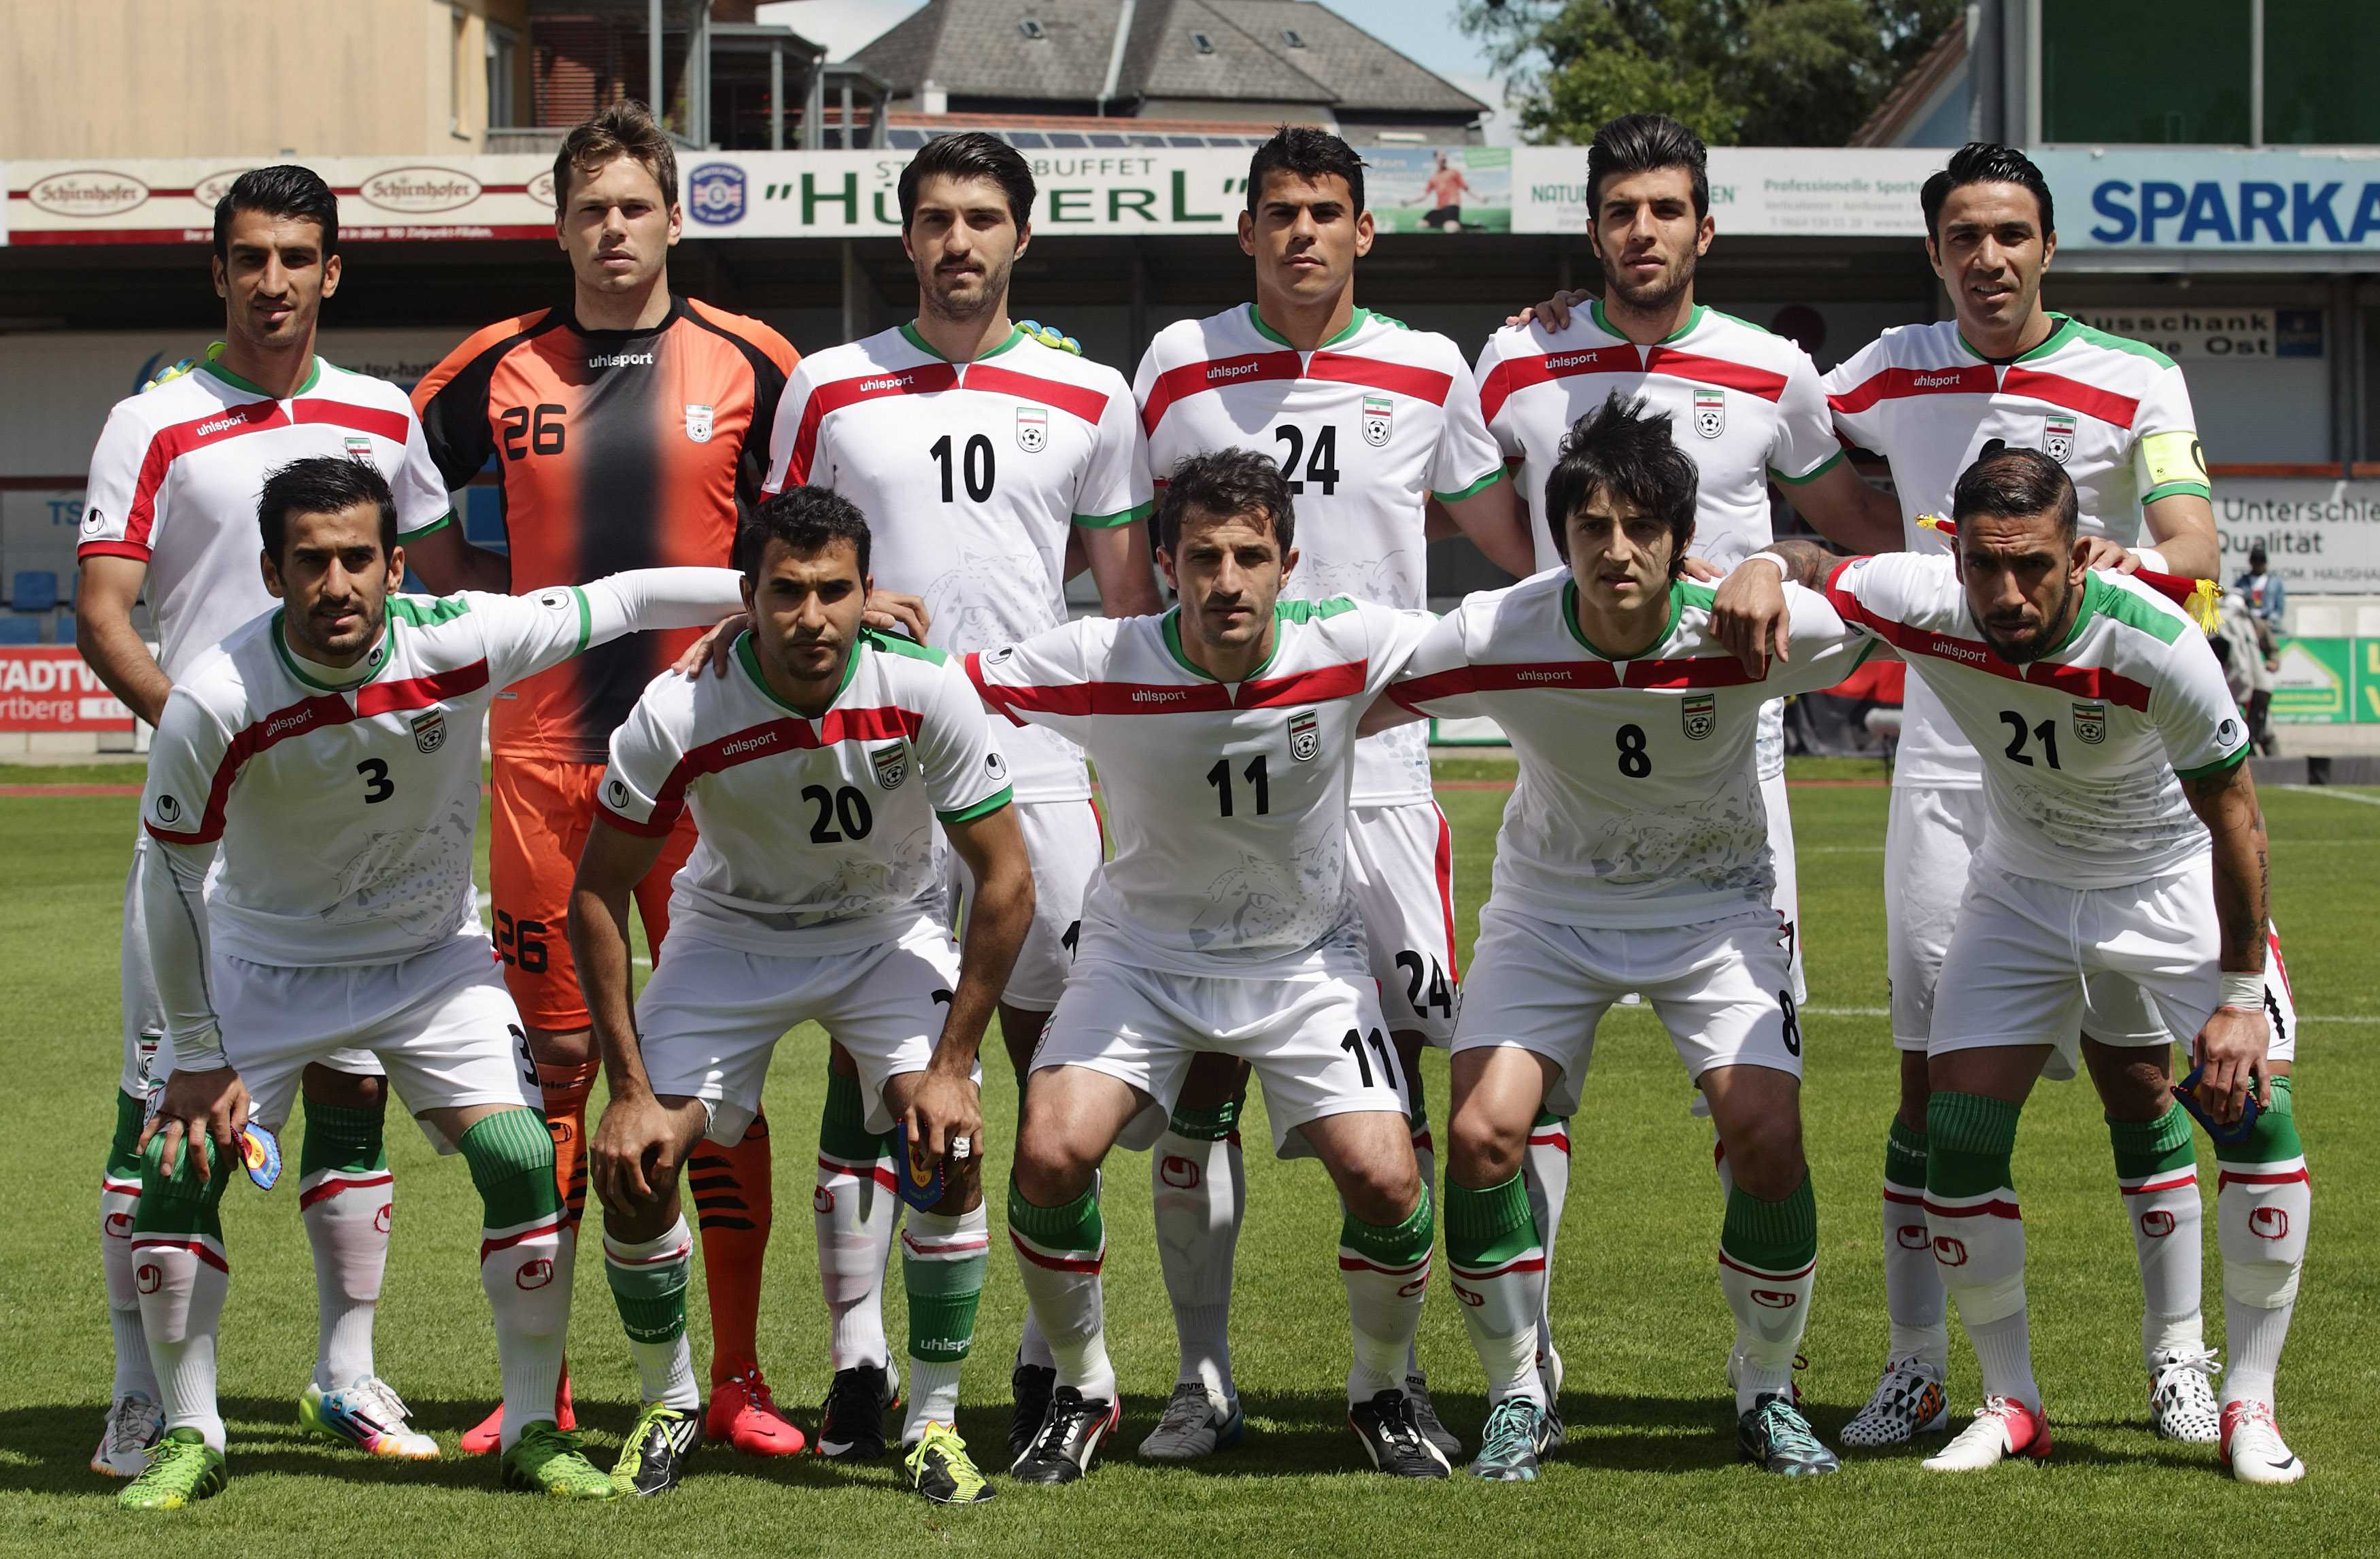 Bloss ein Schnauz weit und breit. Irans Nationalmannschaft enttäuscht praktisch auf ganzer Linie.